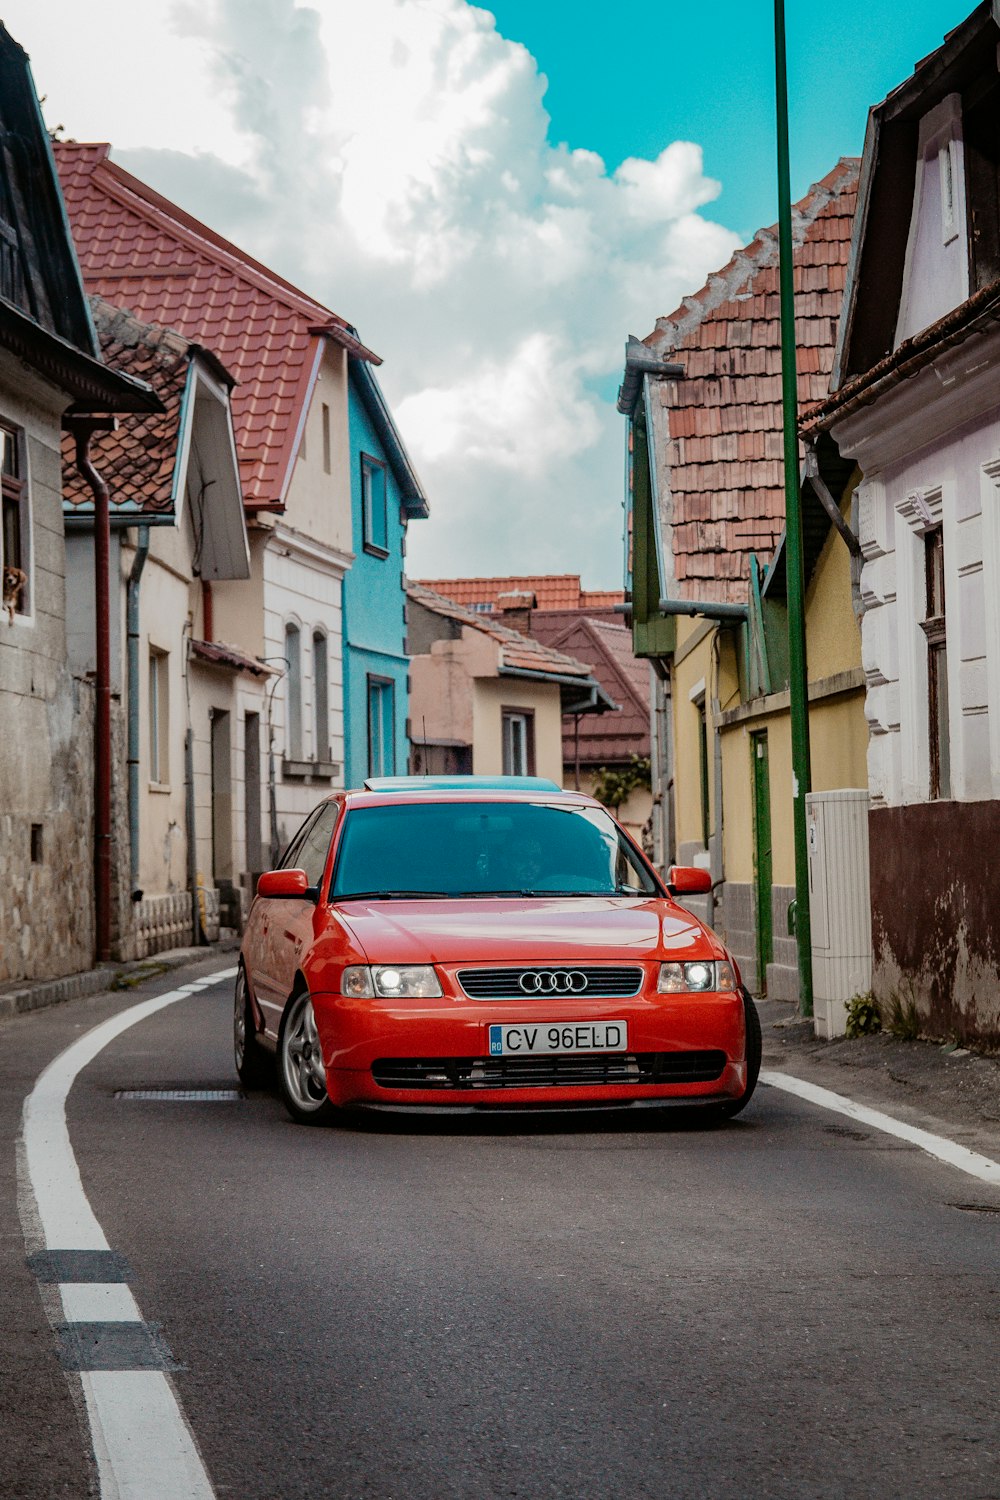 roter Audi RS2 auf der Straße in der Nähe von Häusern